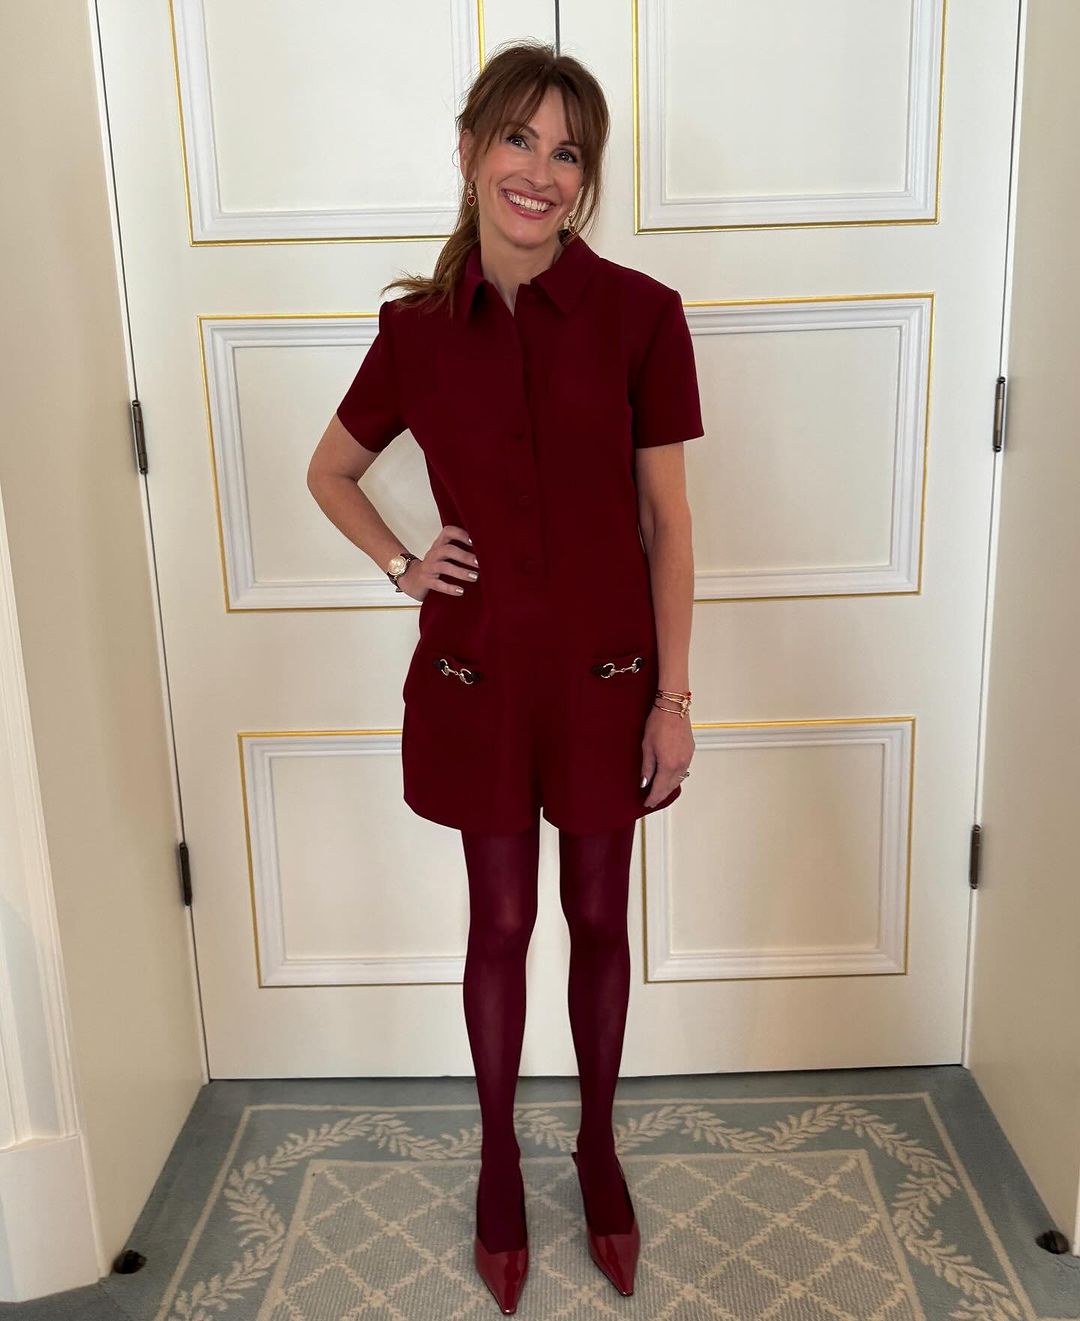 Η Julia Roberts φοράει και απογειώνει το χρώμα trend της σεζόν που θυμίζει νότες κόκκινου κρασιού